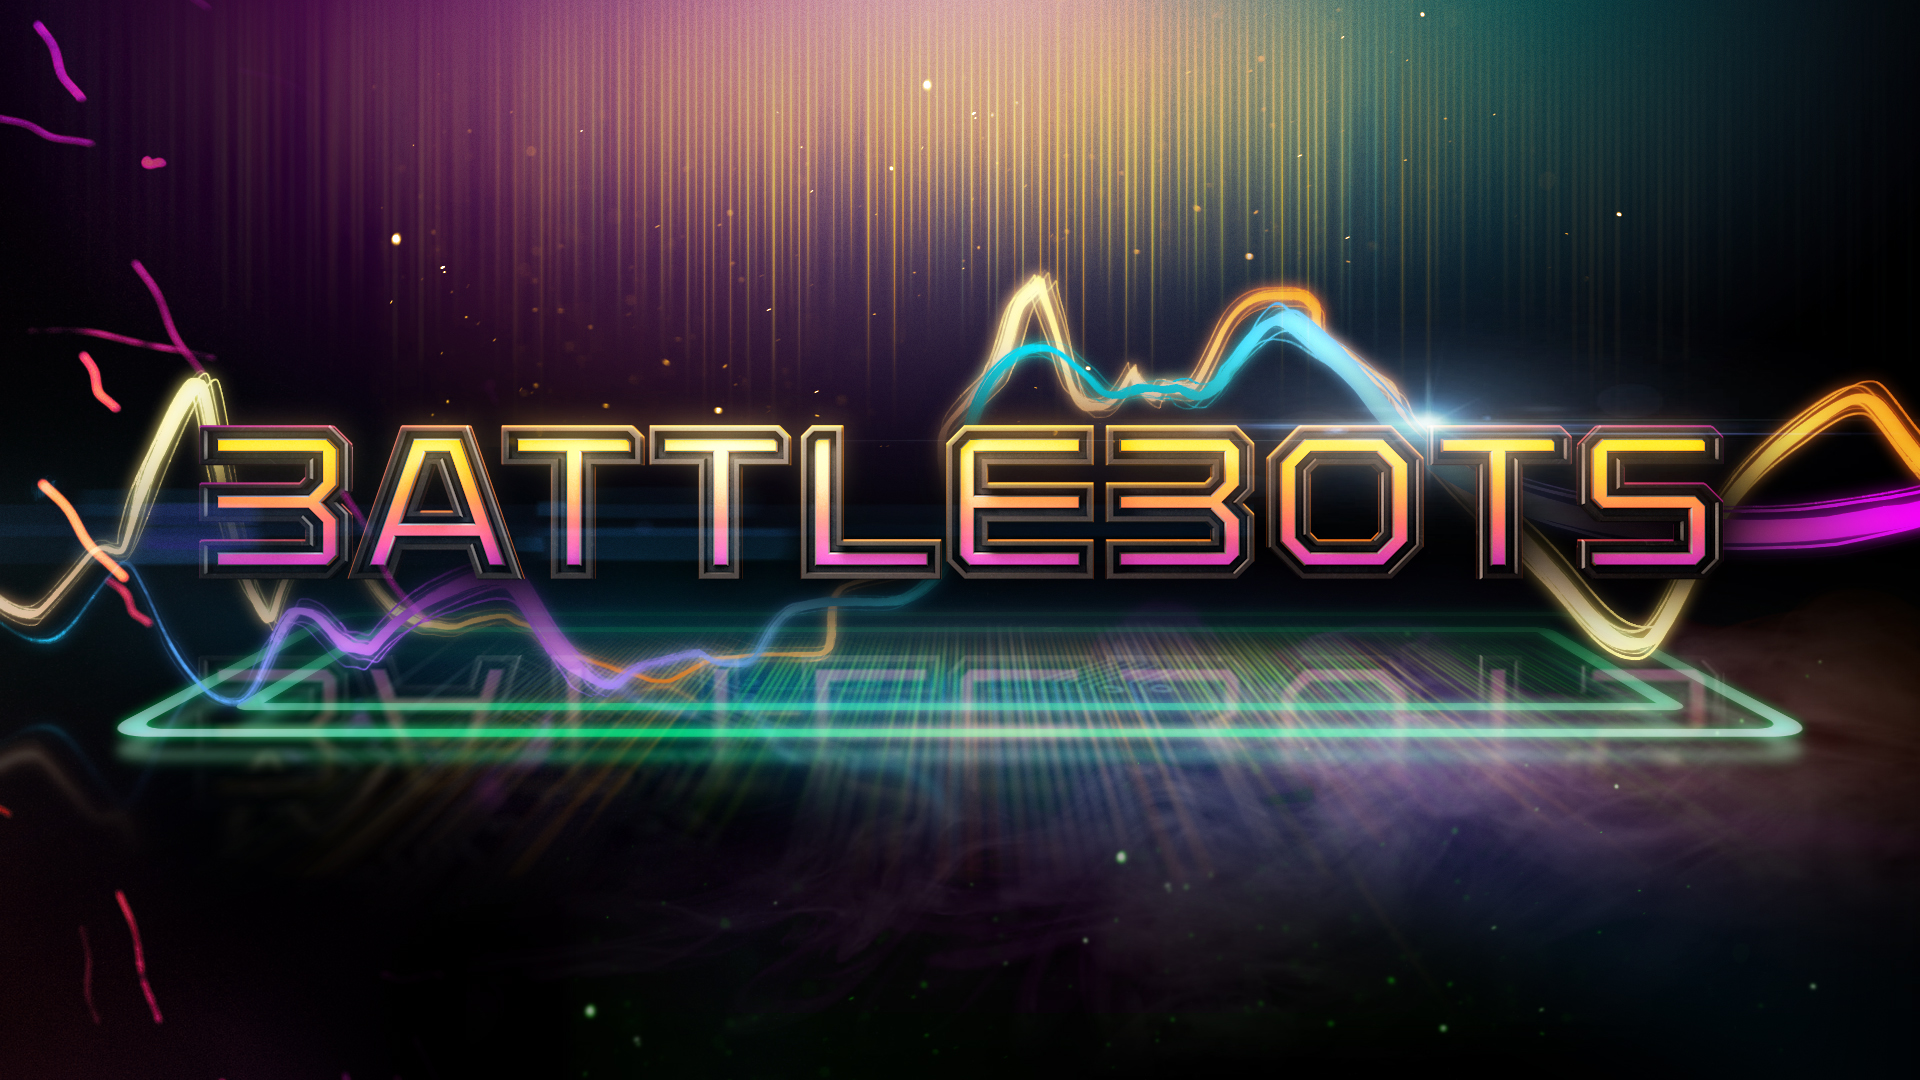 BattleBots_am_06.jpg